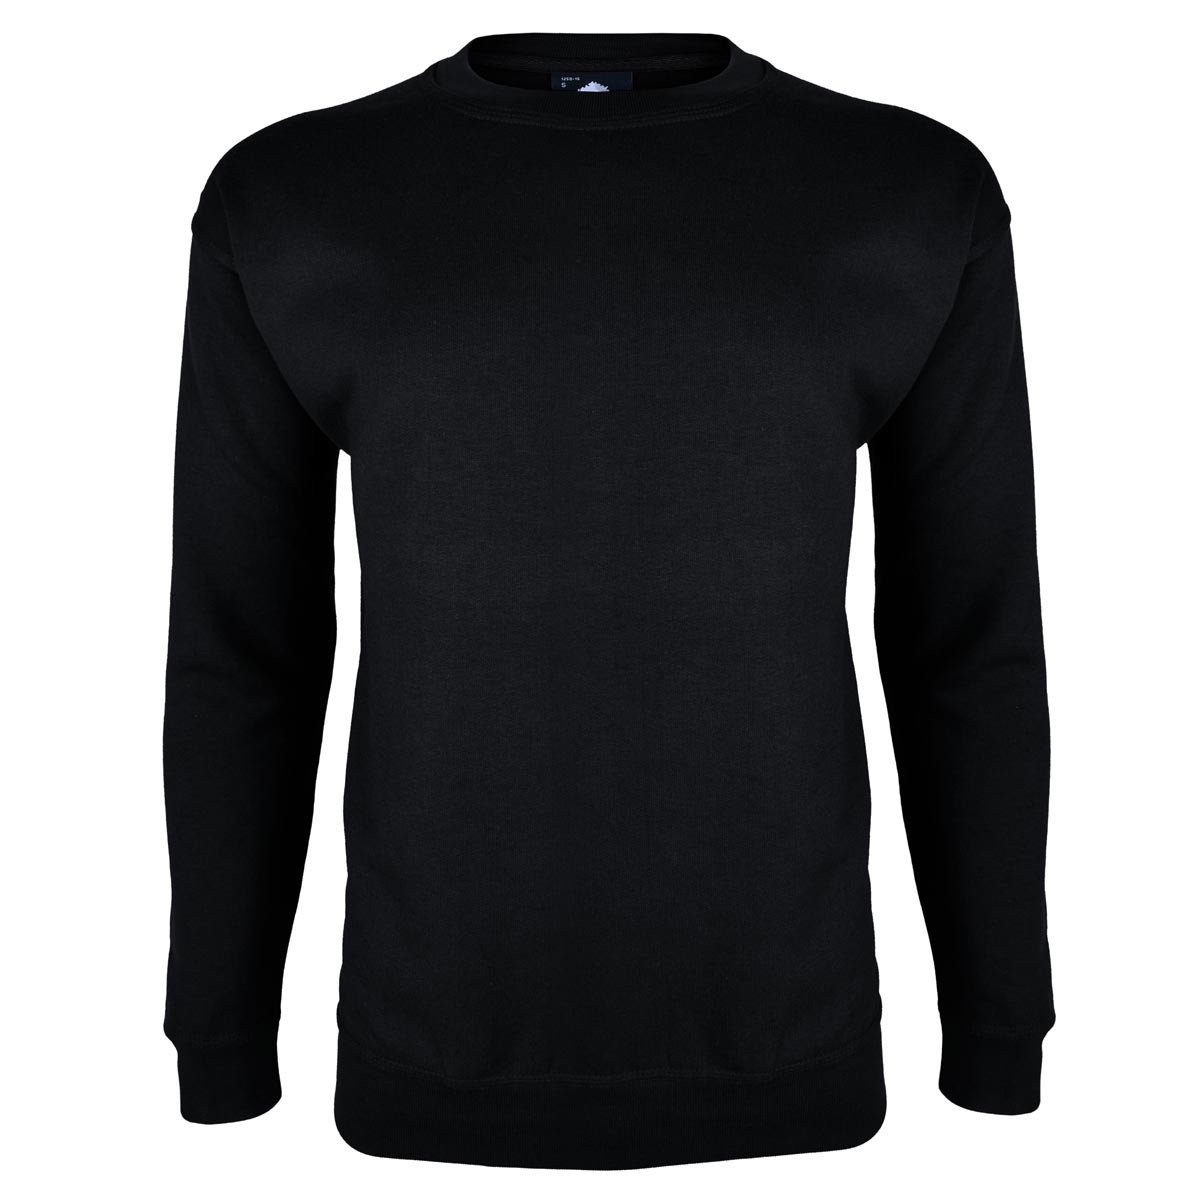 Kitrose Sweat Shirt Men's Sweat Shirt Image Black M 